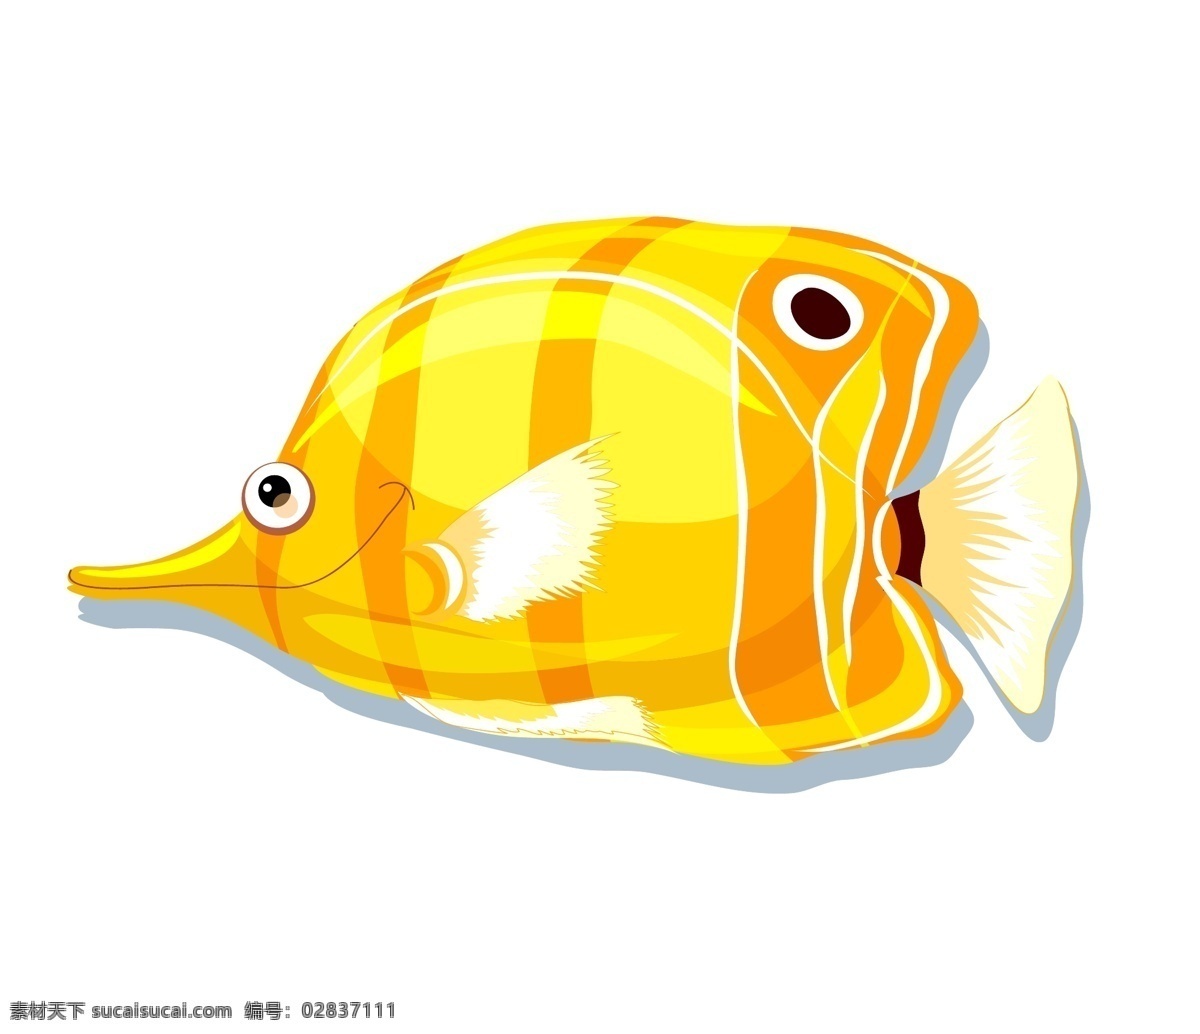 矢量金鱼 矢量观赏鱼 鱼缸鱼 养鱼 金黄的鱼 漂亮鱼插画 卡通金鱼 手绘金鱼 鱼侧面 矢量彩色金鱼 动物 生物世界 鱼类